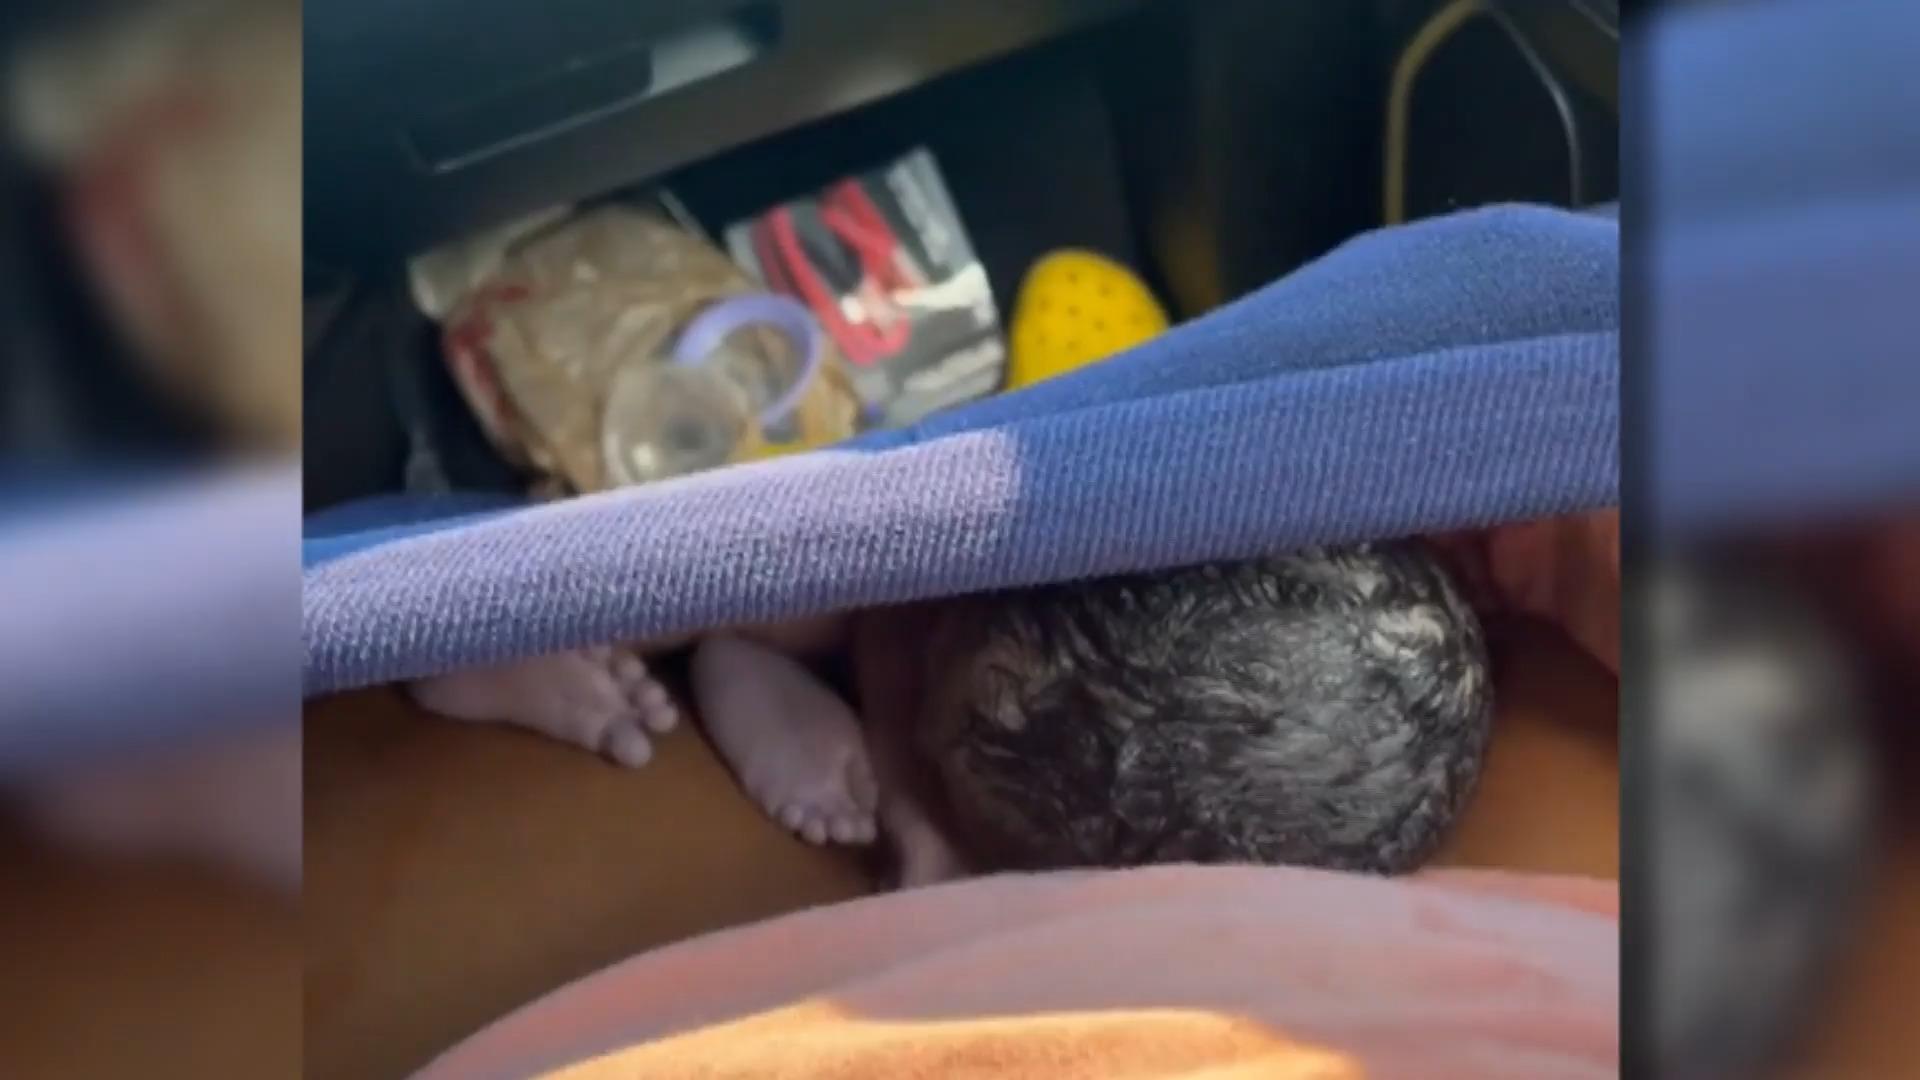 Frau bringt Baby im Auto zur Welt - mitten im Stau! Polizei eskortiert sie ins Krankenhaus